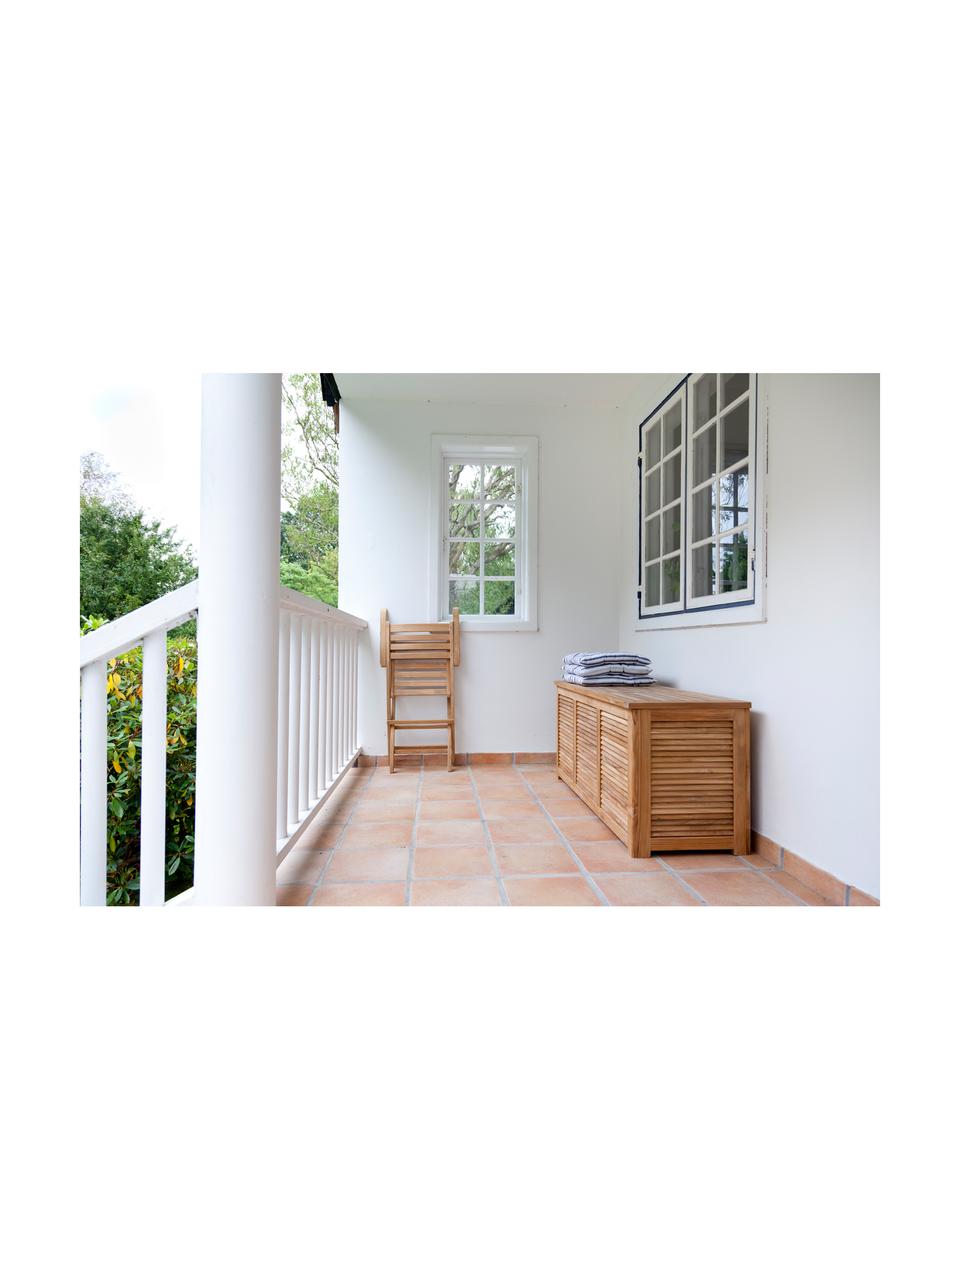 Tuinbox Storage van hout, Gepolijst teakhout, Teak, B 130 x H 60 cm